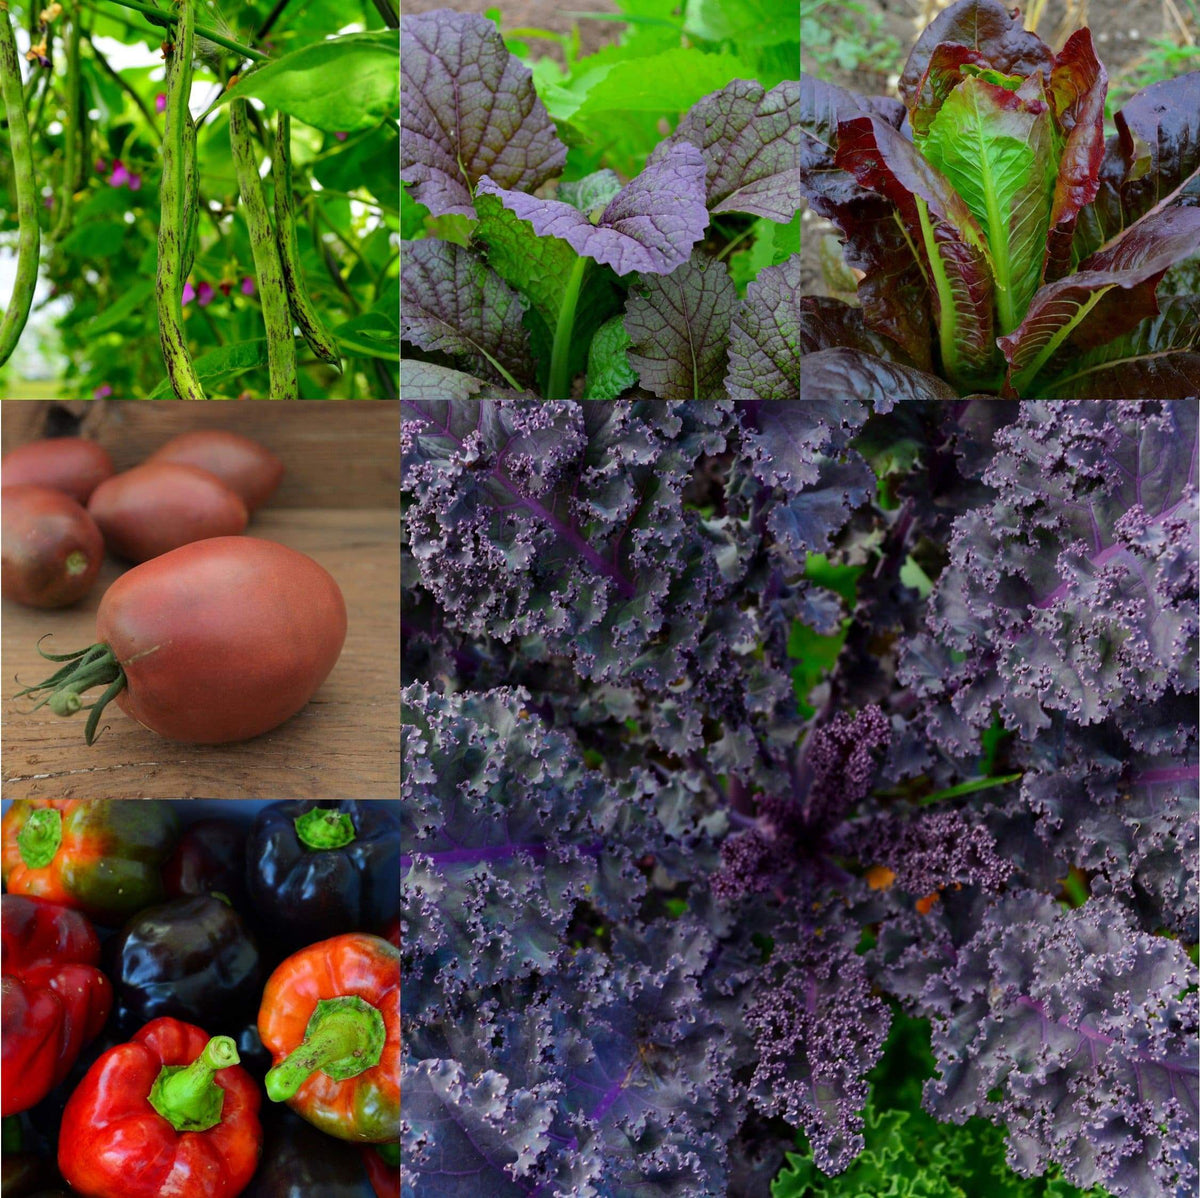 Purple Garden Collection